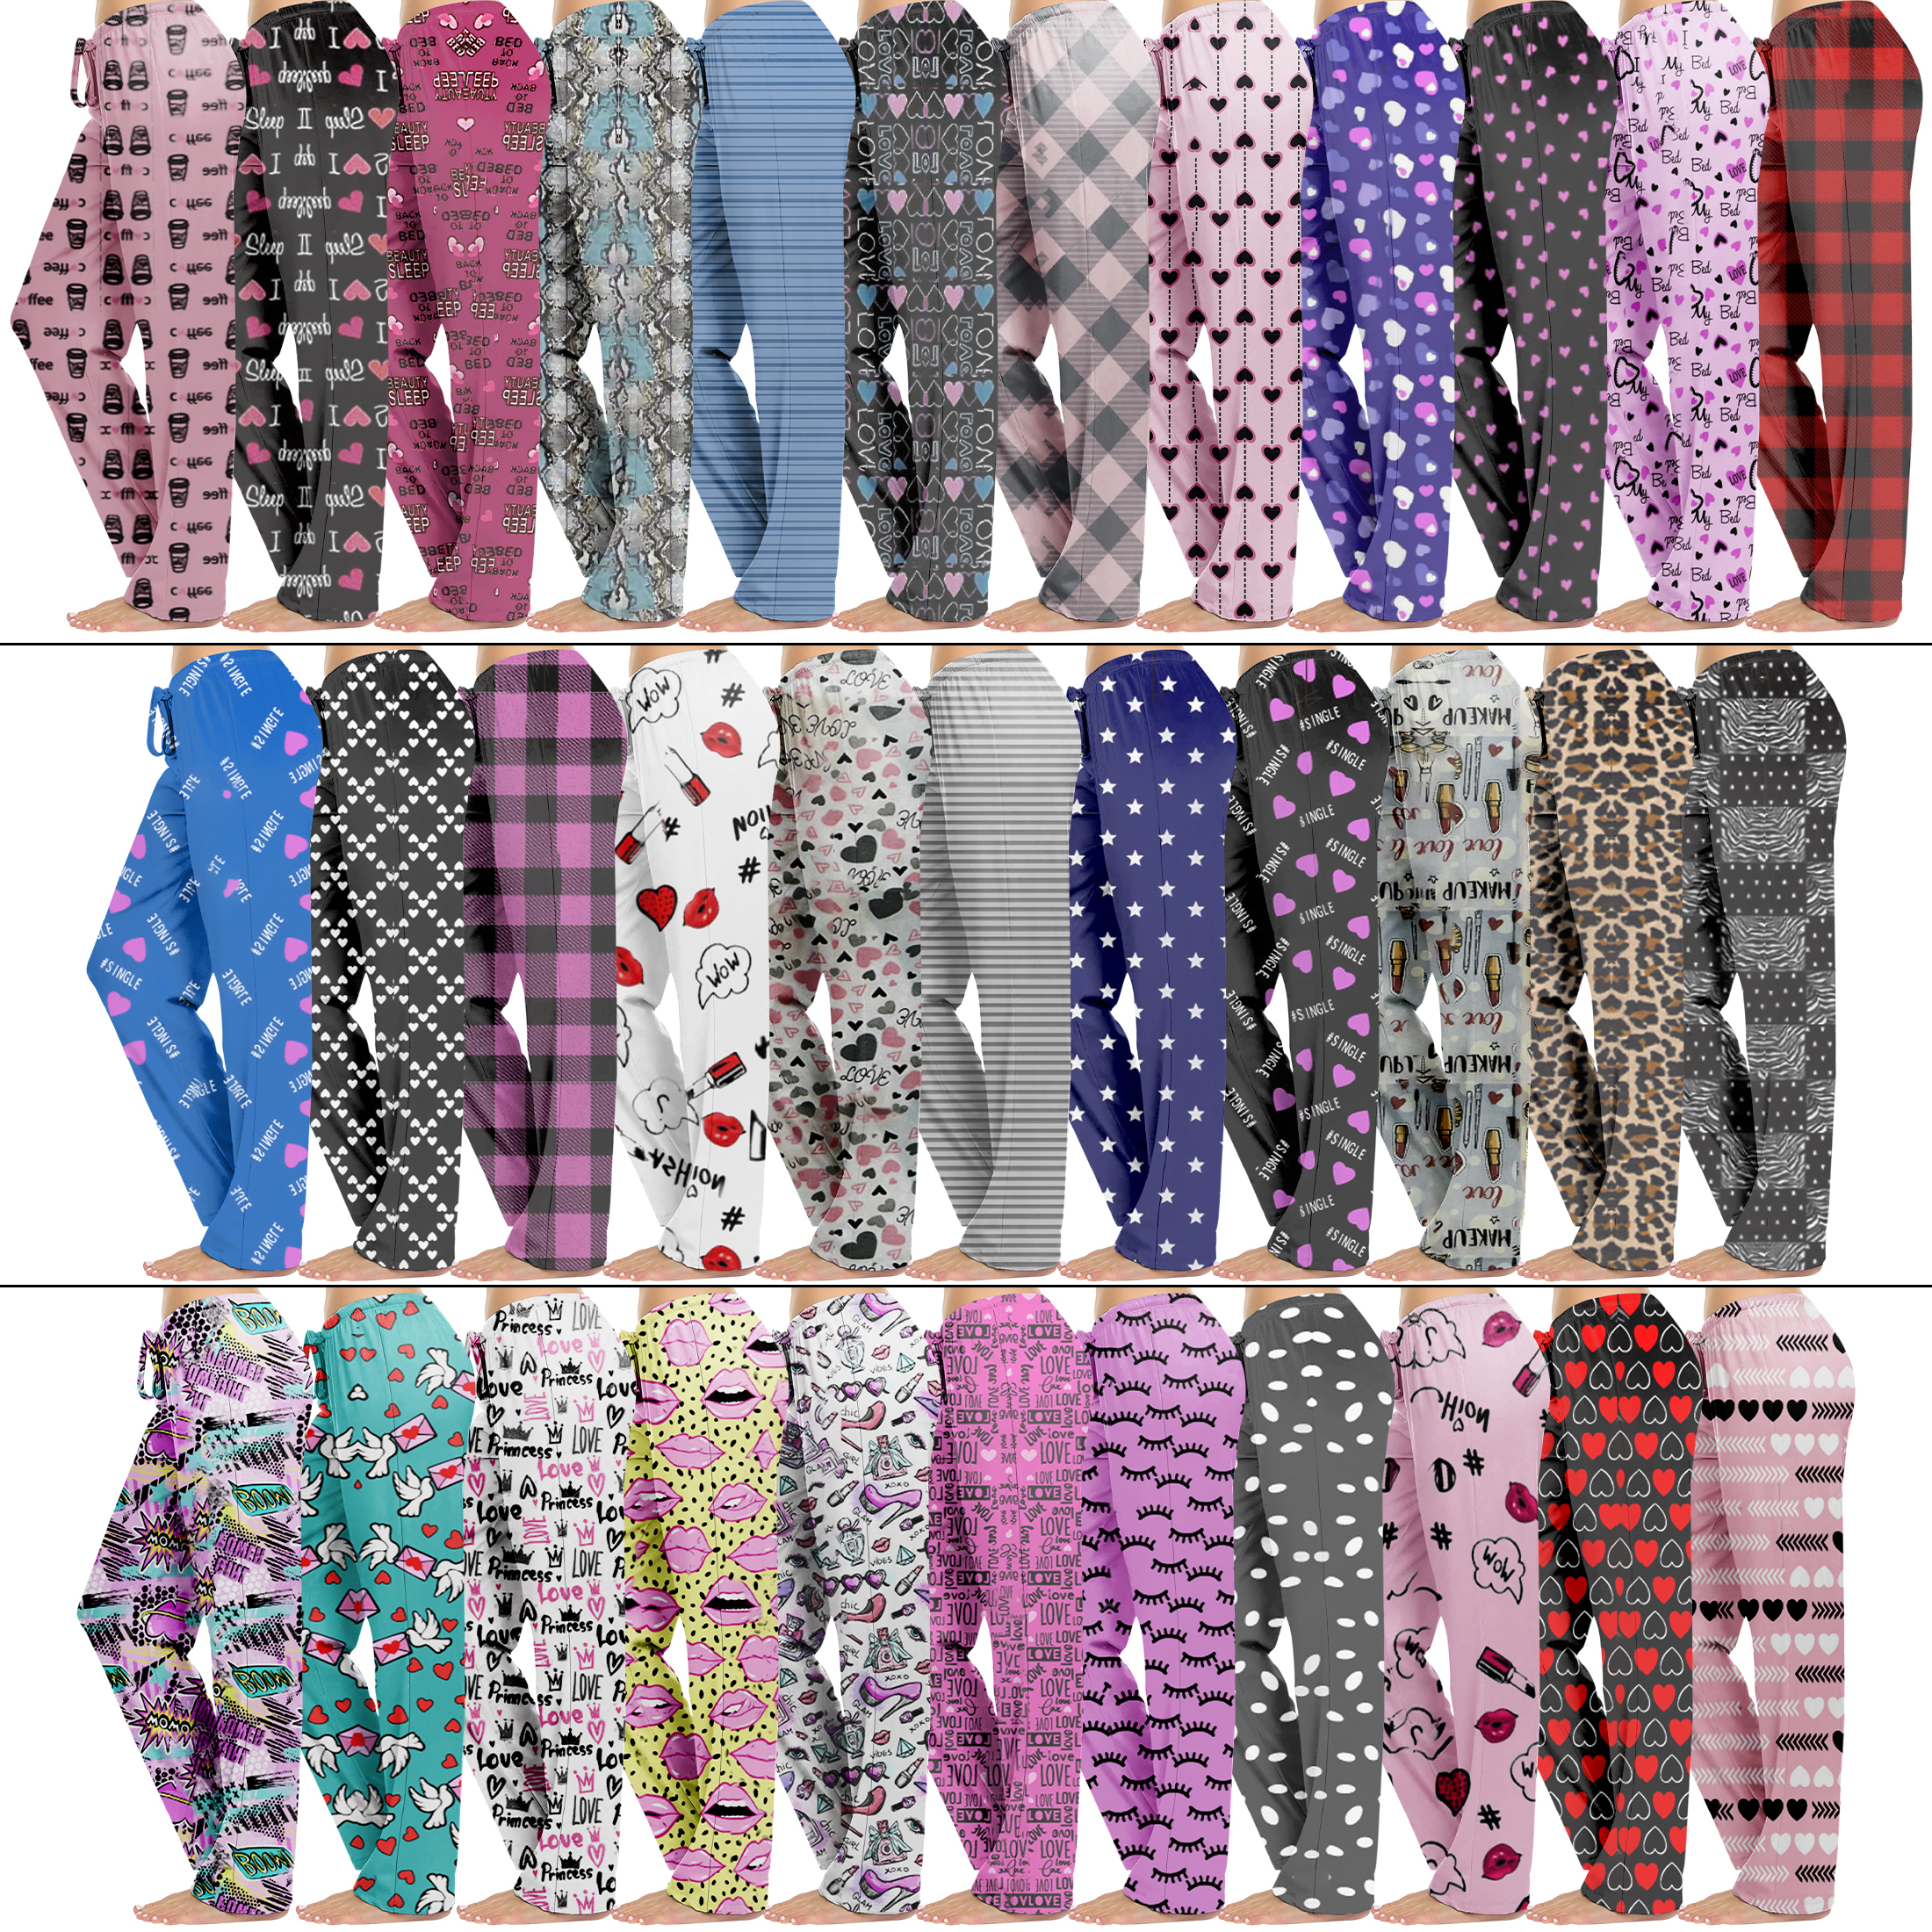 Multi-Pack: Women's Comfy Printed Lounge Pajama Pants For Sleepwear - 1 Pack, Medium